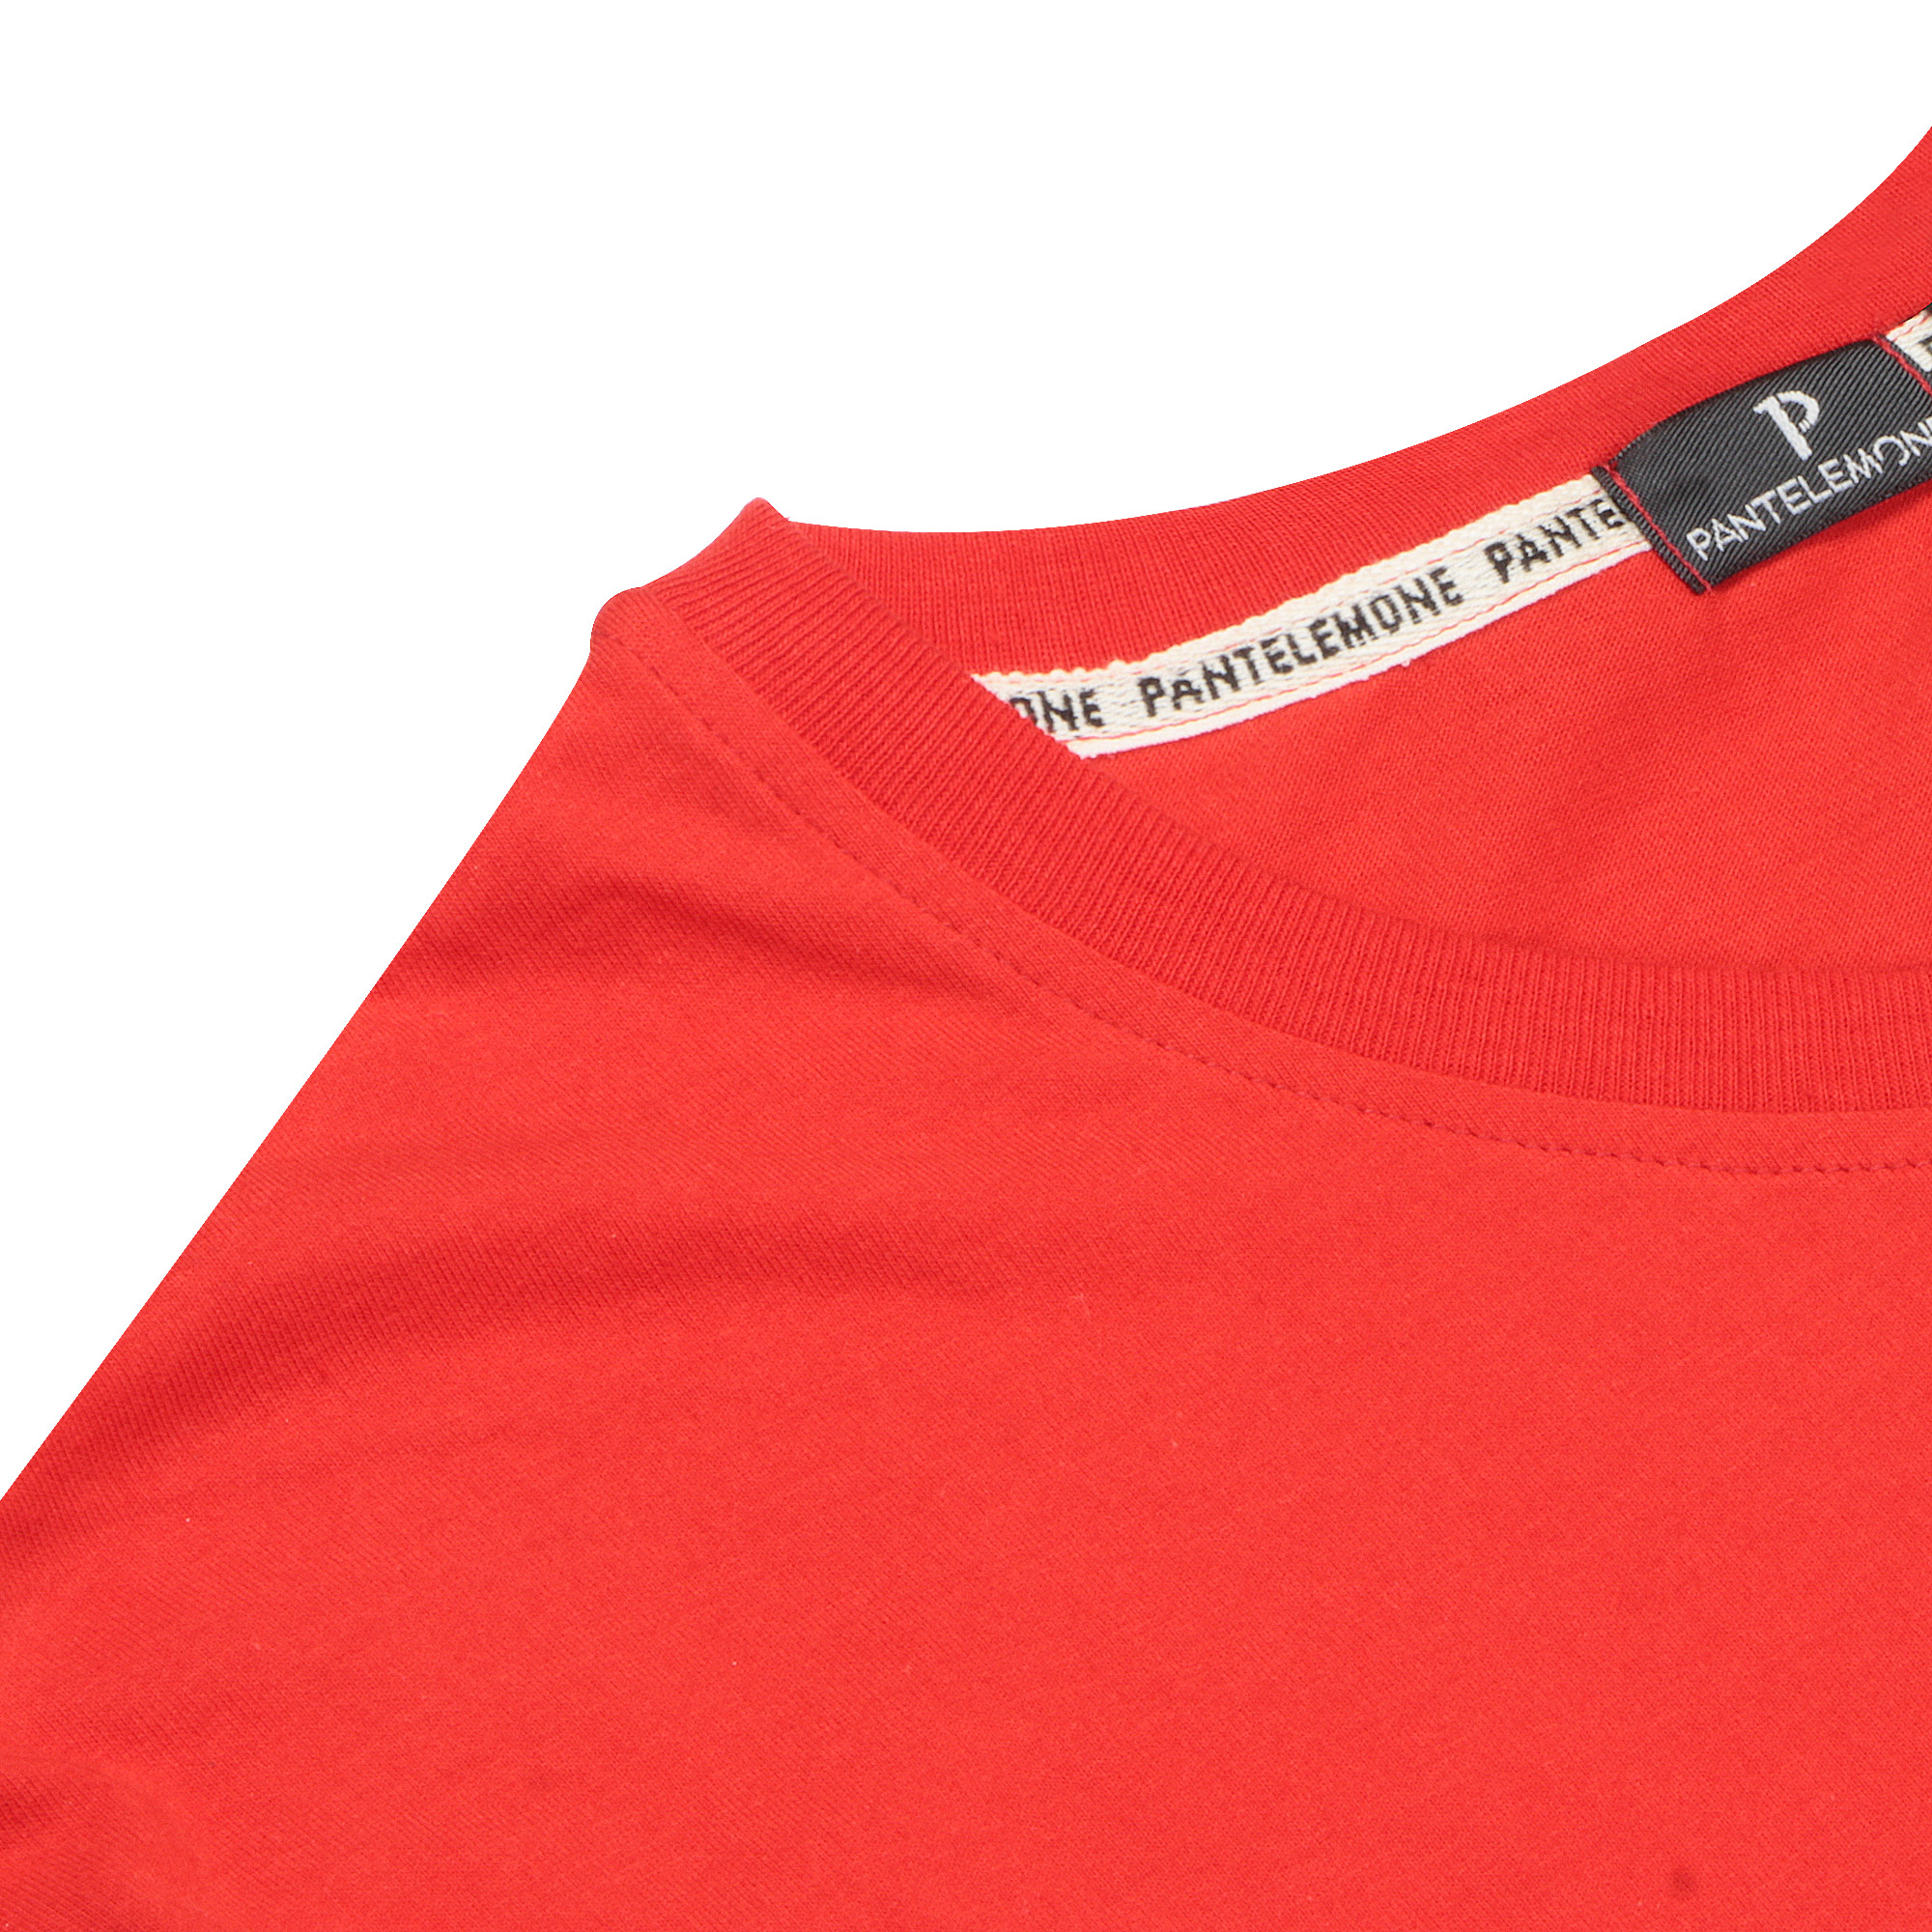 Мужская футболка Pantelemone MF-898 красная 48, цвет красный, размер 48 - фото 3